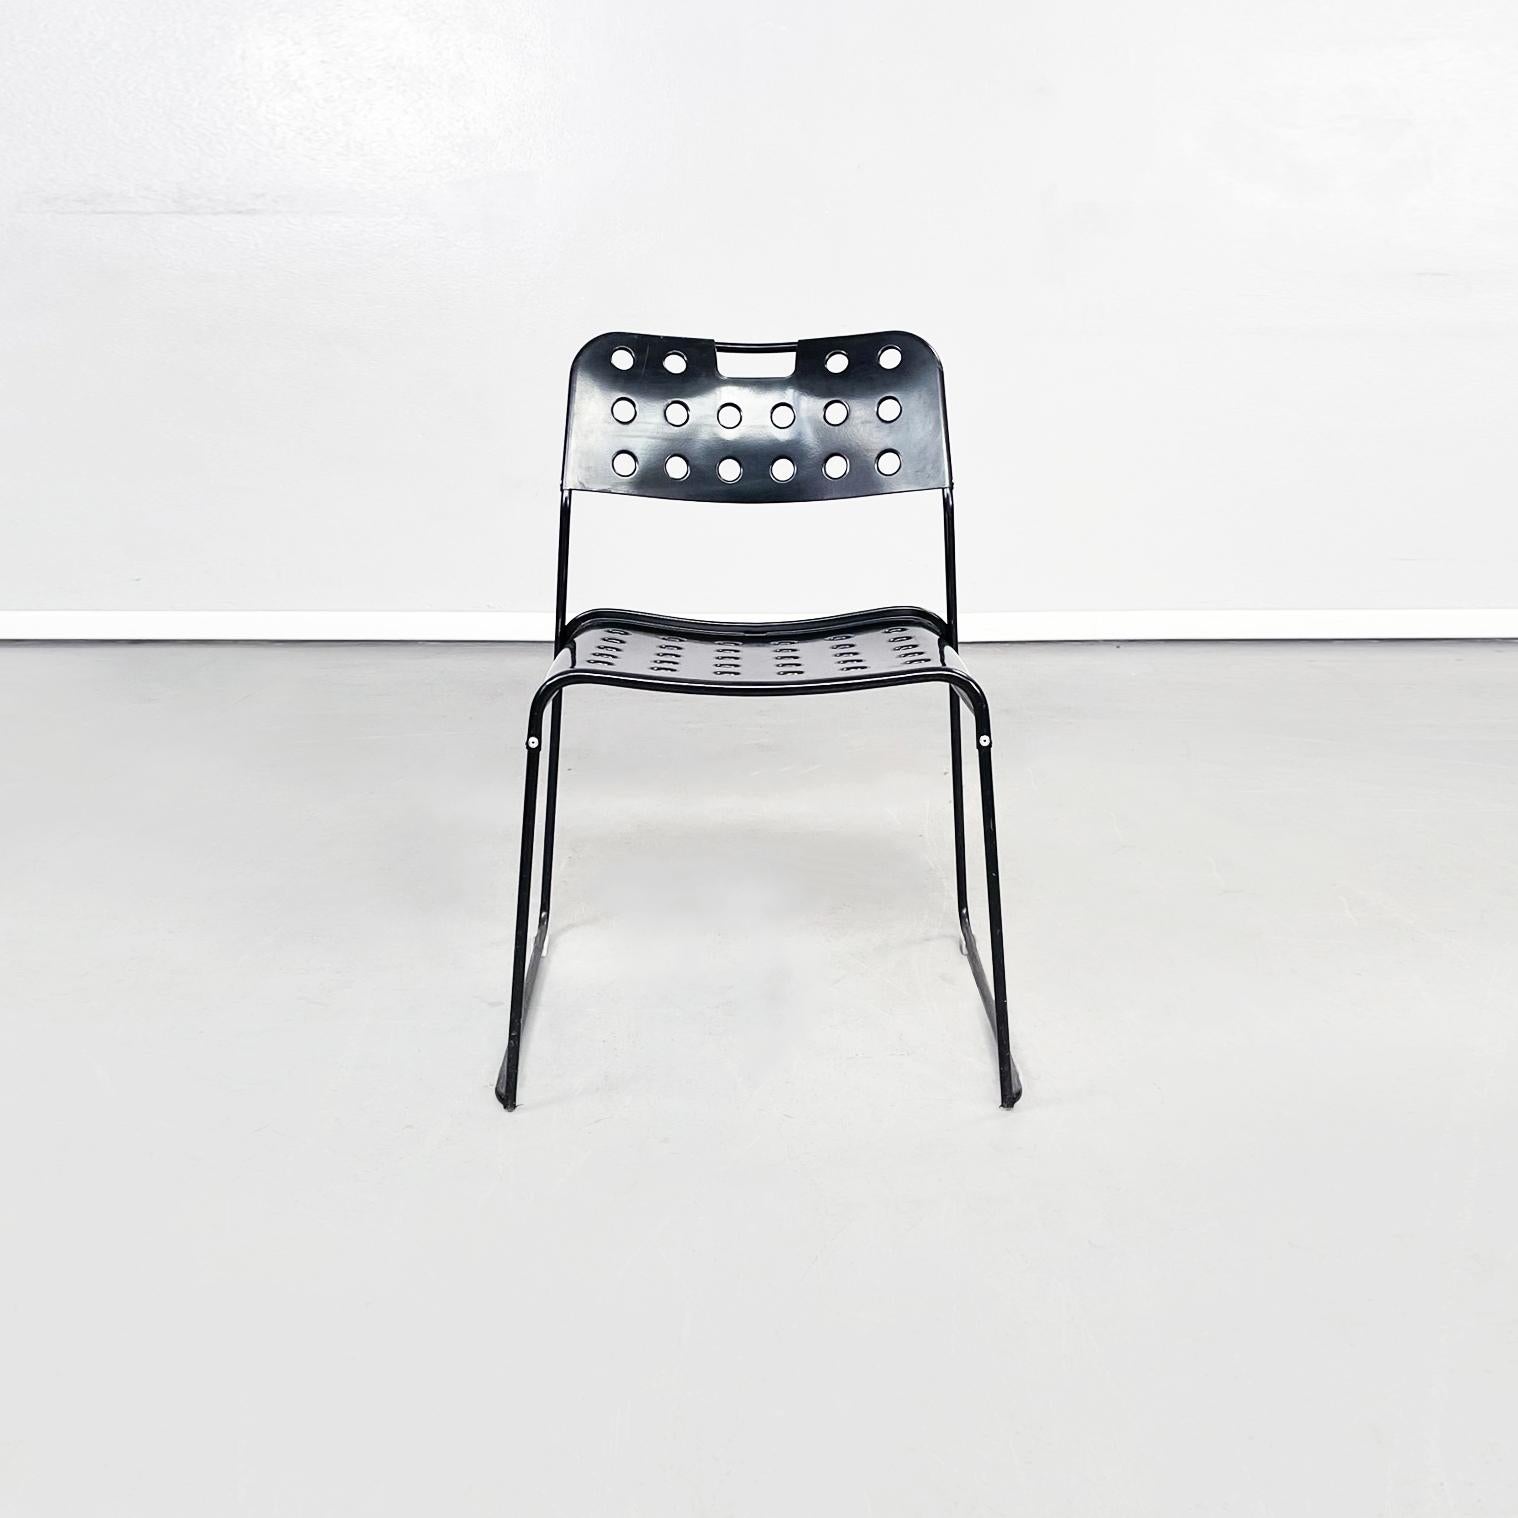 Italienische Moderne Schwarze Stahlstühle Omstak von Rodney Kinsman für Bieffeplast, 1970er
Fantastisches Paar Stühle mod. Omstak, mit schwarz lackierten Stahlstange Struktur. Die Sitzfläche und die Rückenlehne aus schwarz lackiertem Metall haben